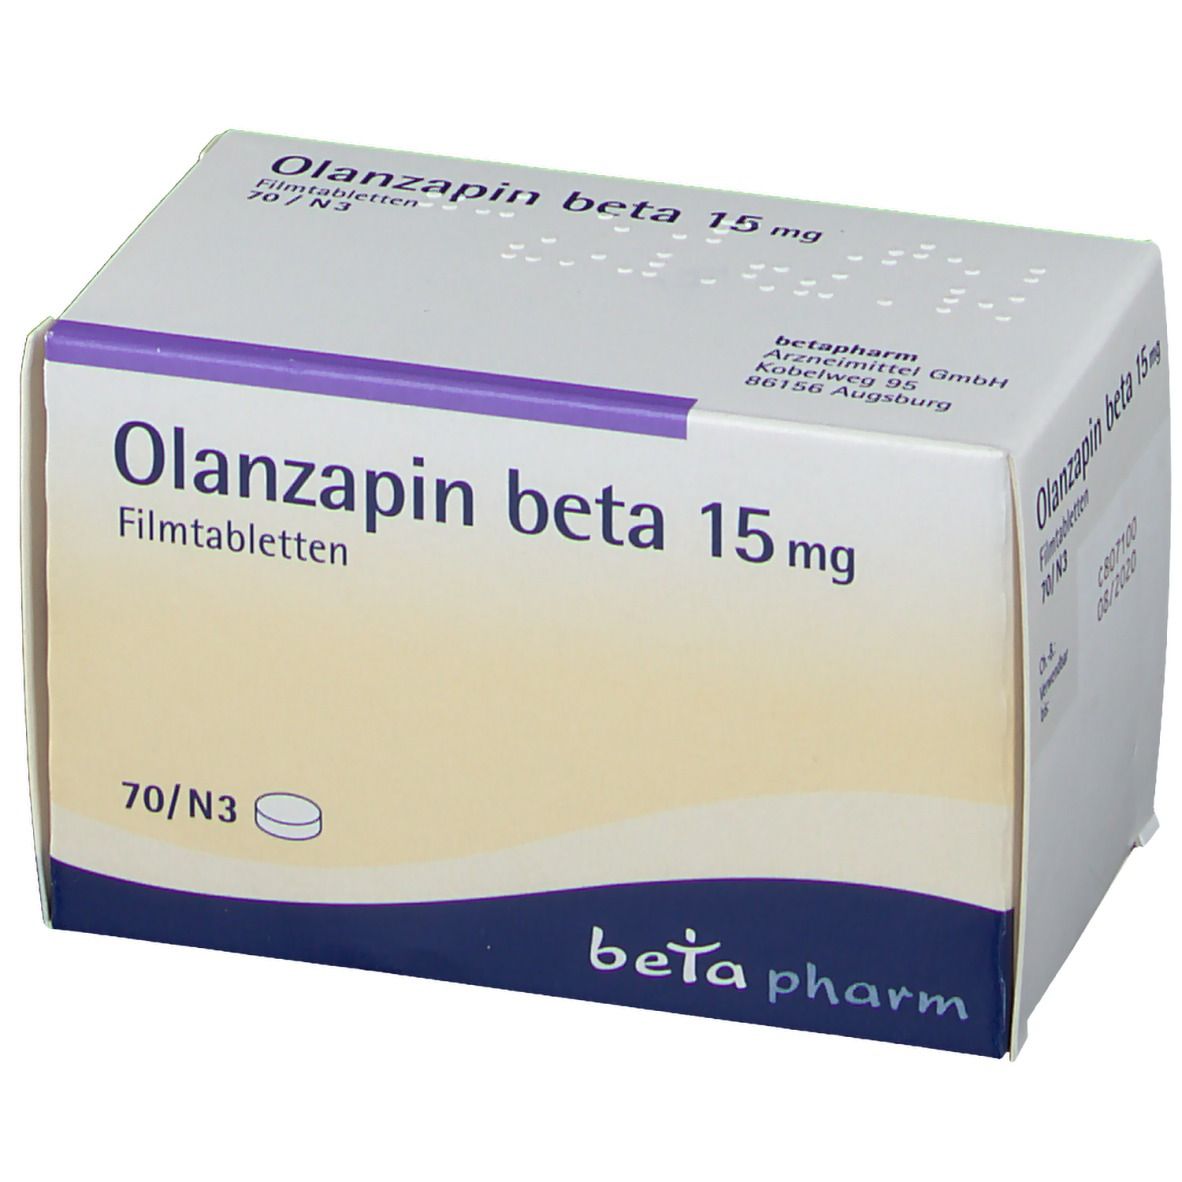 Olanzapin beta 15 mg